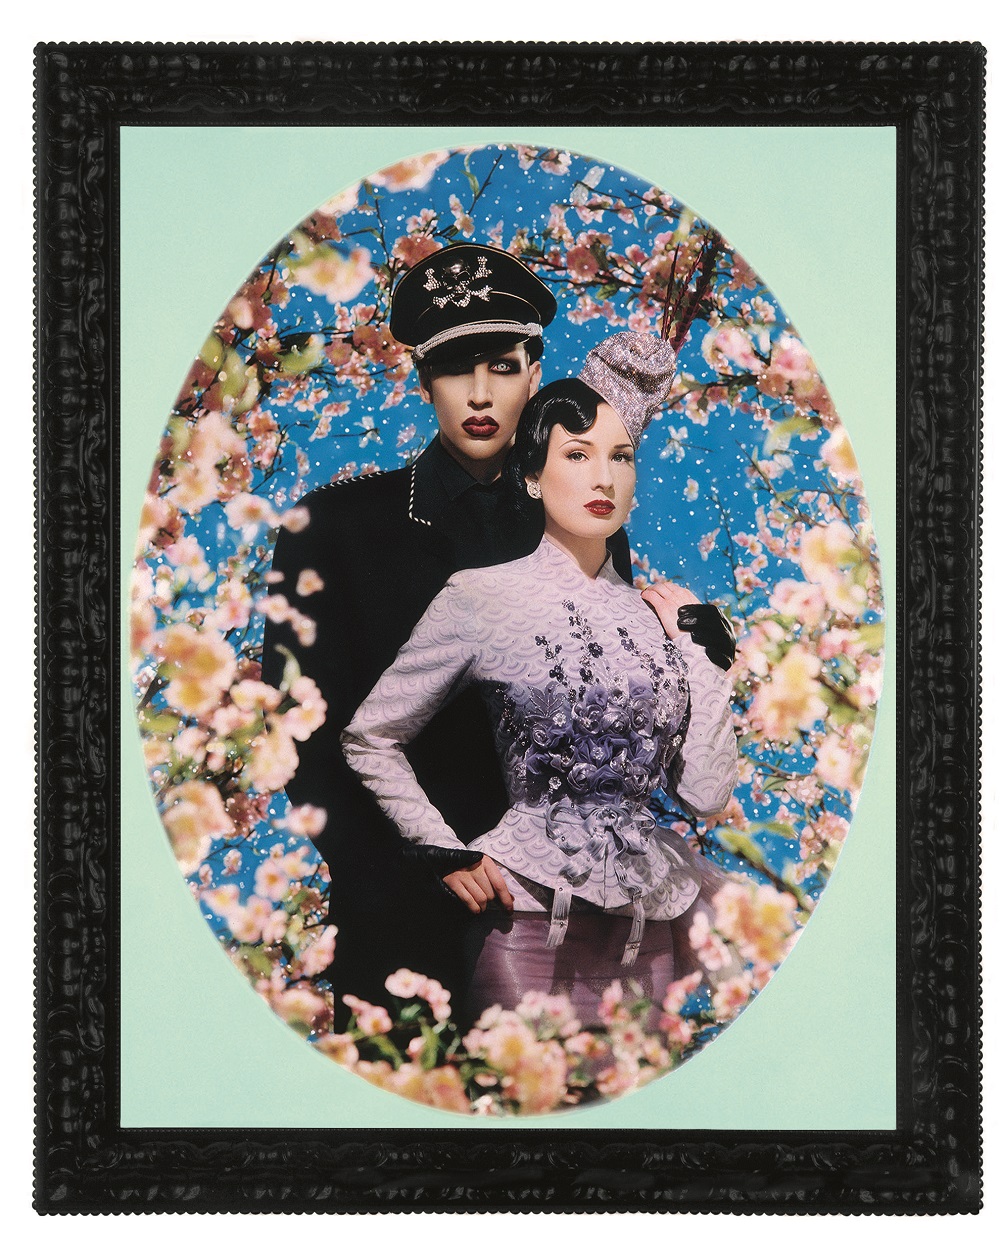 Le Grand Amour, Marilyn Manson et Dita von Teese, Pinault Collection © Pierre et Gilles, Courtesy Noirmontartproduction